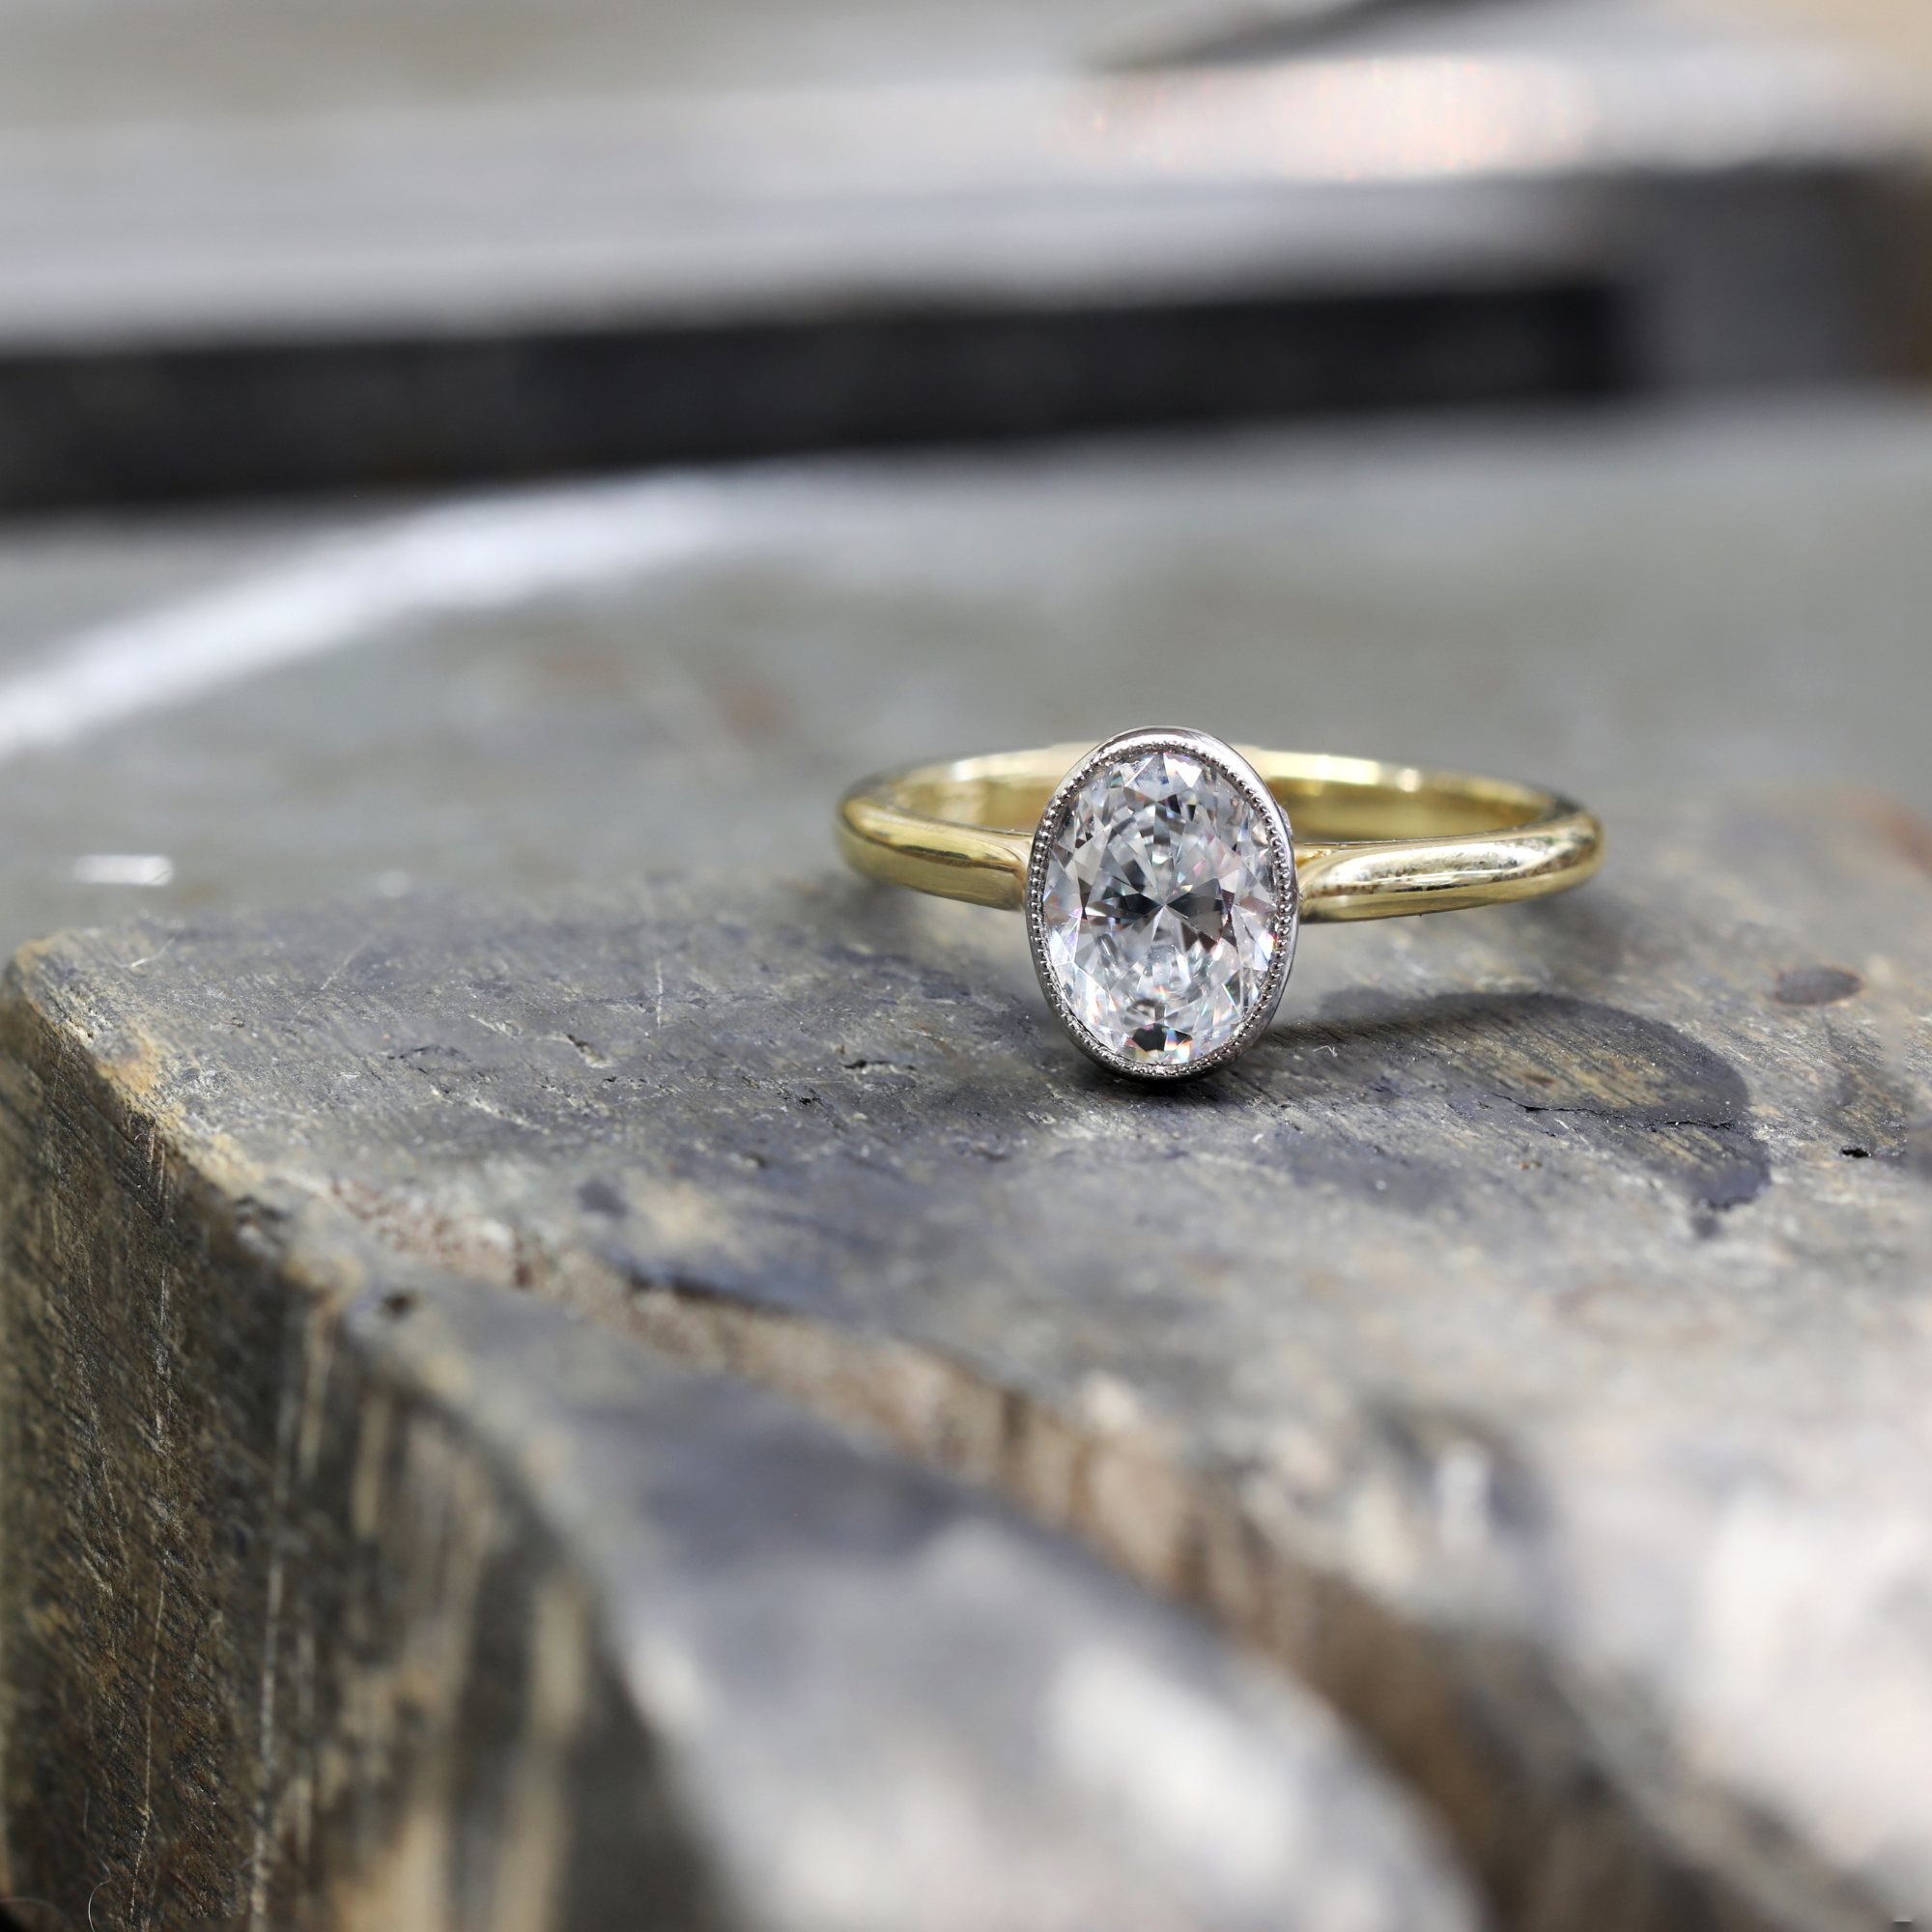 My Belle Epoque Oval Cut Portrait Diamond Engagement Ring